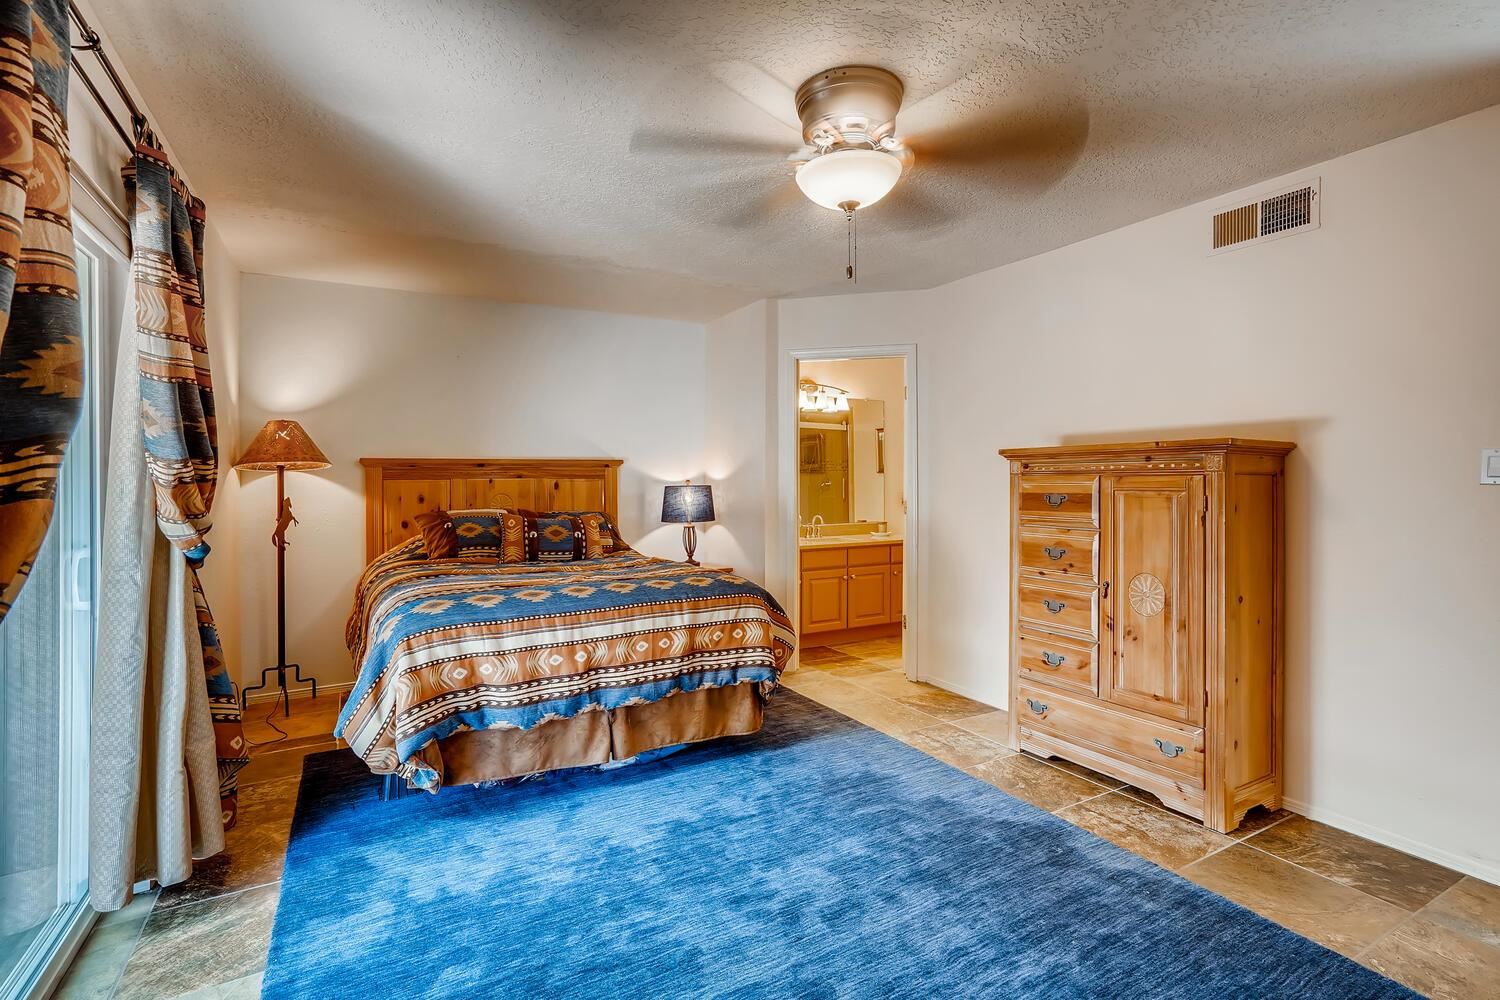 1543 Escondida, Santa Fe, New Mexico 87507, 3 Bedrooms Bedrooms, ,2 BathroomsBathrooms,Residential,For Sale,1543 Escondida,202102460